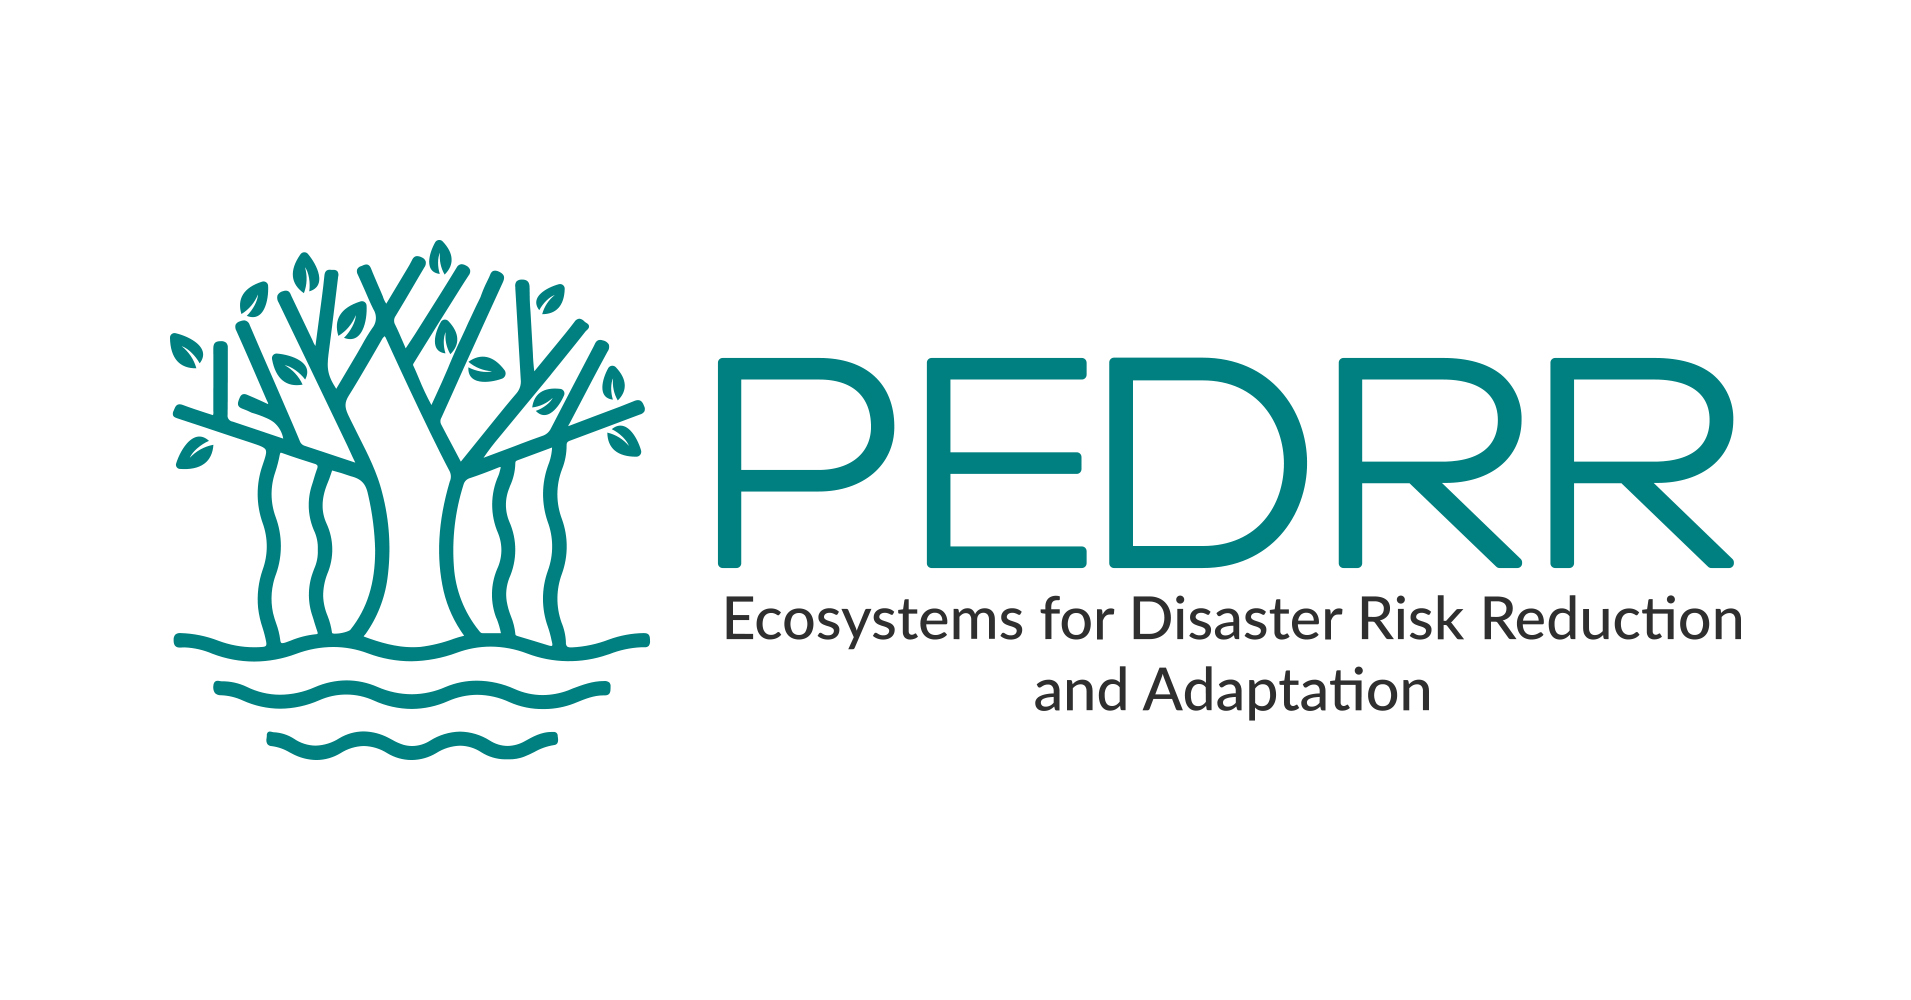 El INDESS entra a formar parte de la Alianza para el Medio Ambiente y la Reducción del Riesgo de Desastres (PEDRR) de Naciones Unidas gracias al Laboratorio Social COEDPA.